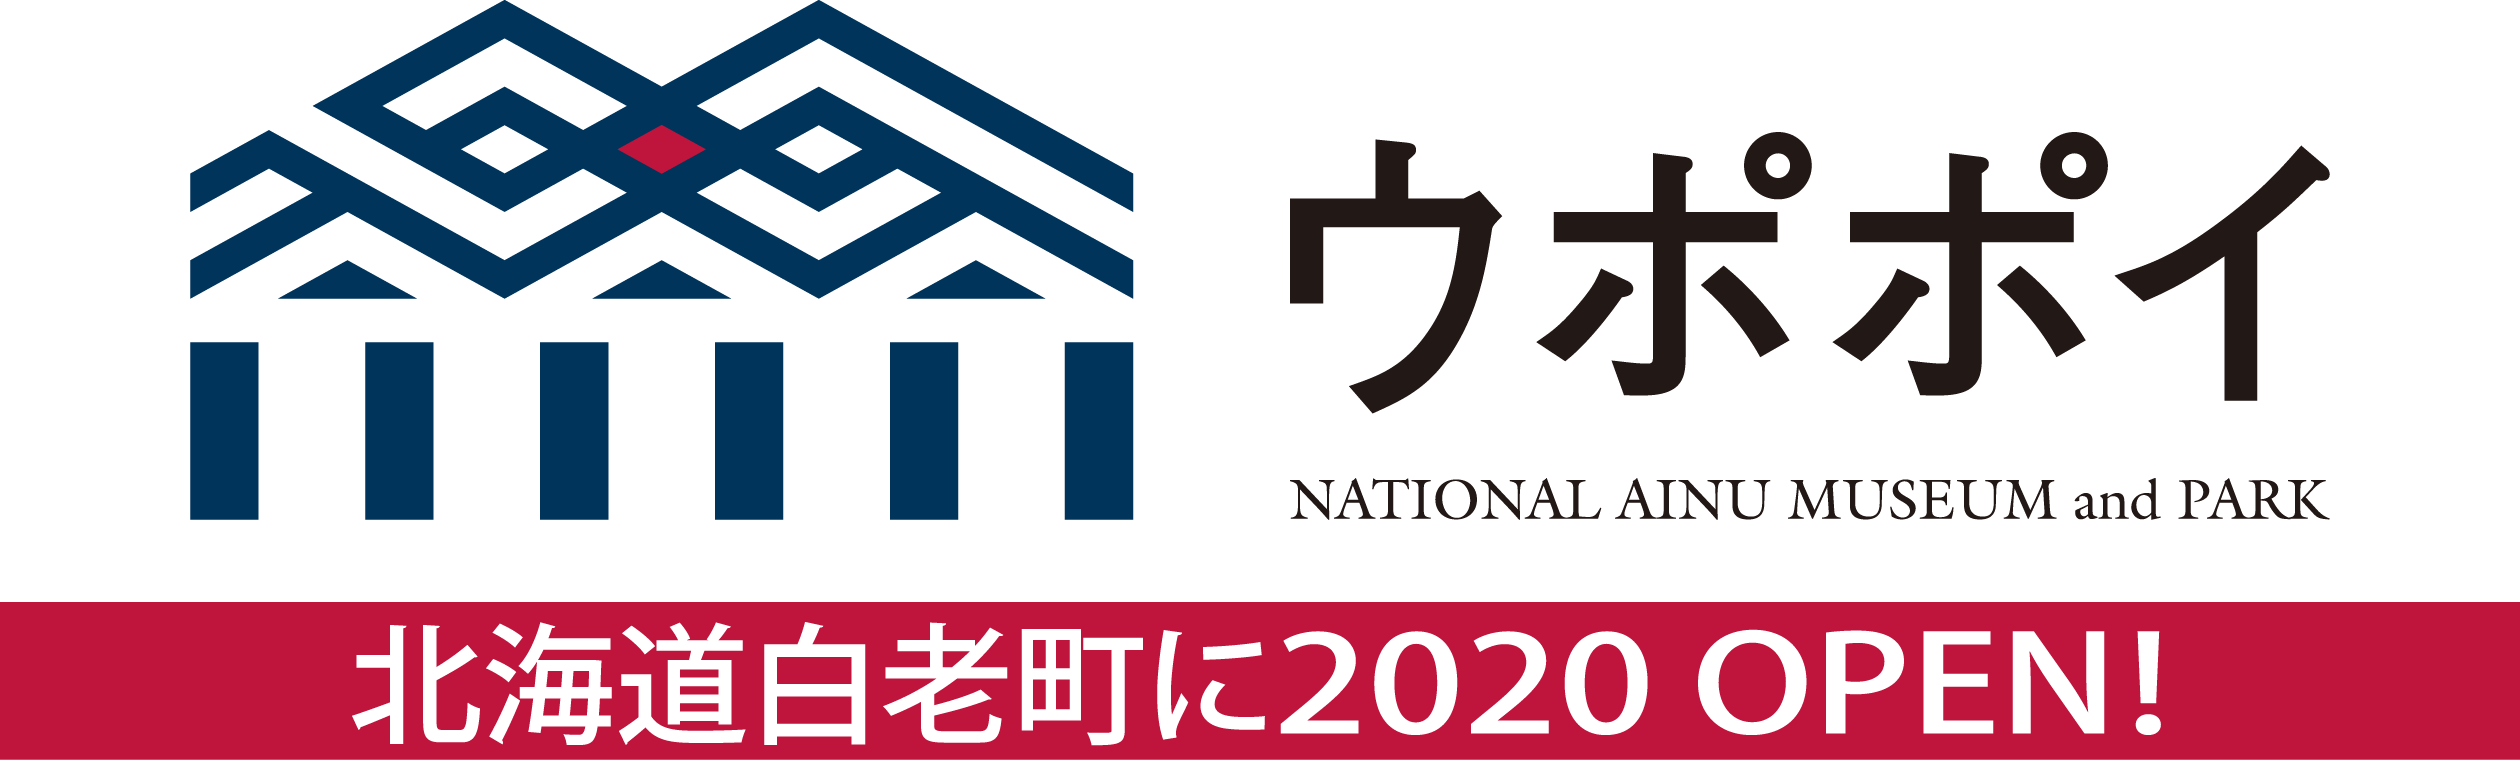 ウポポイ | NATIONAL AINU MUSEUM and PARK | 北海道白老町に2020 OPEN!